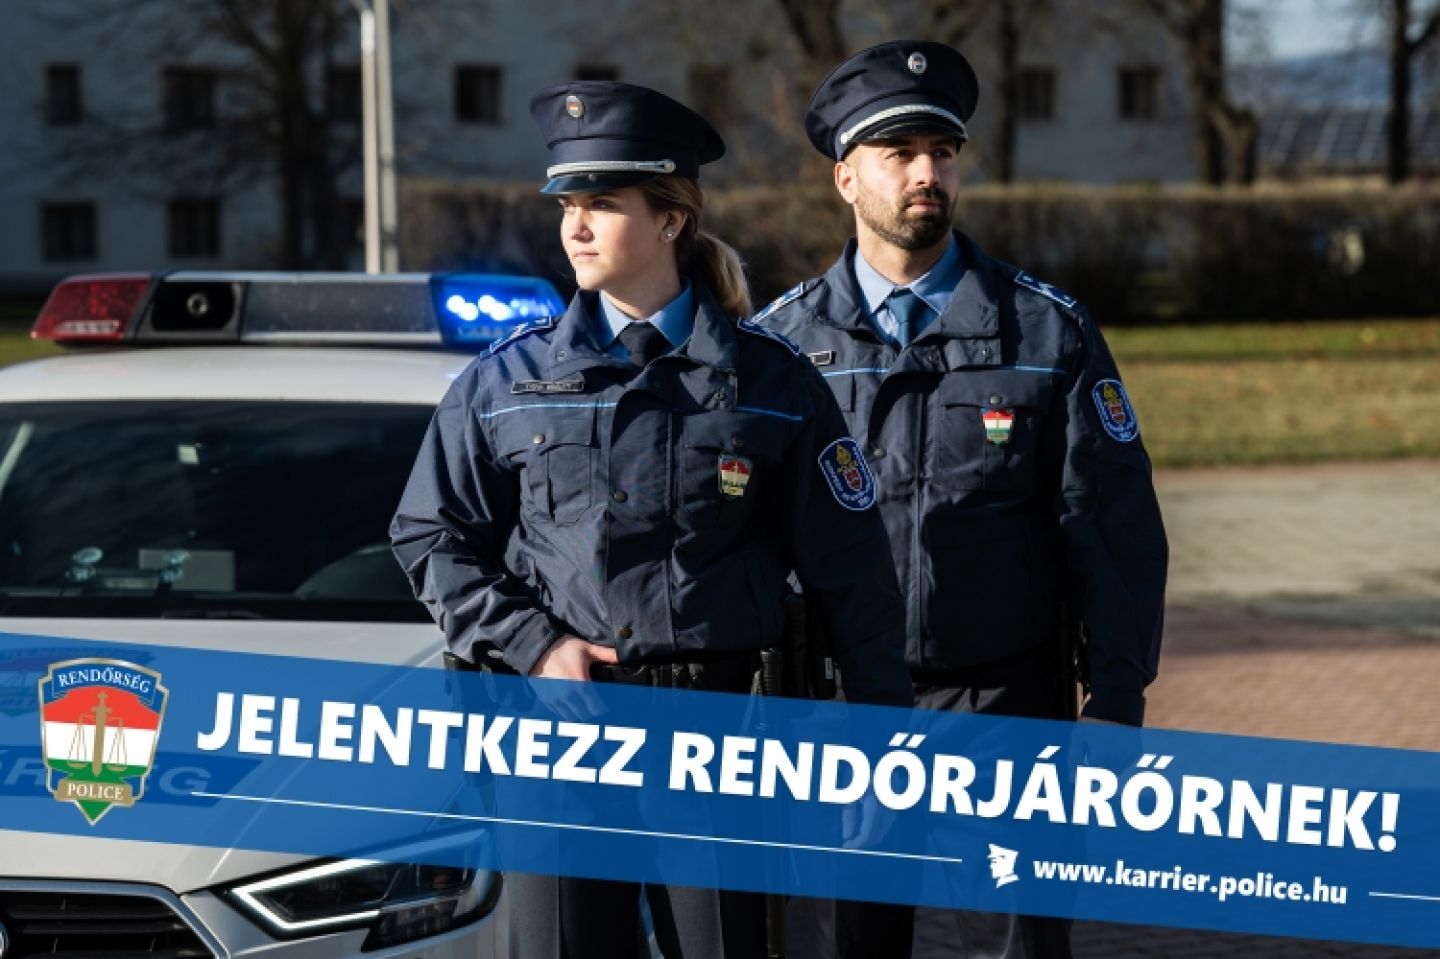 JELENTKEZZ RENDŐRJÁRŐRNEK!  www.karrier.police.hu